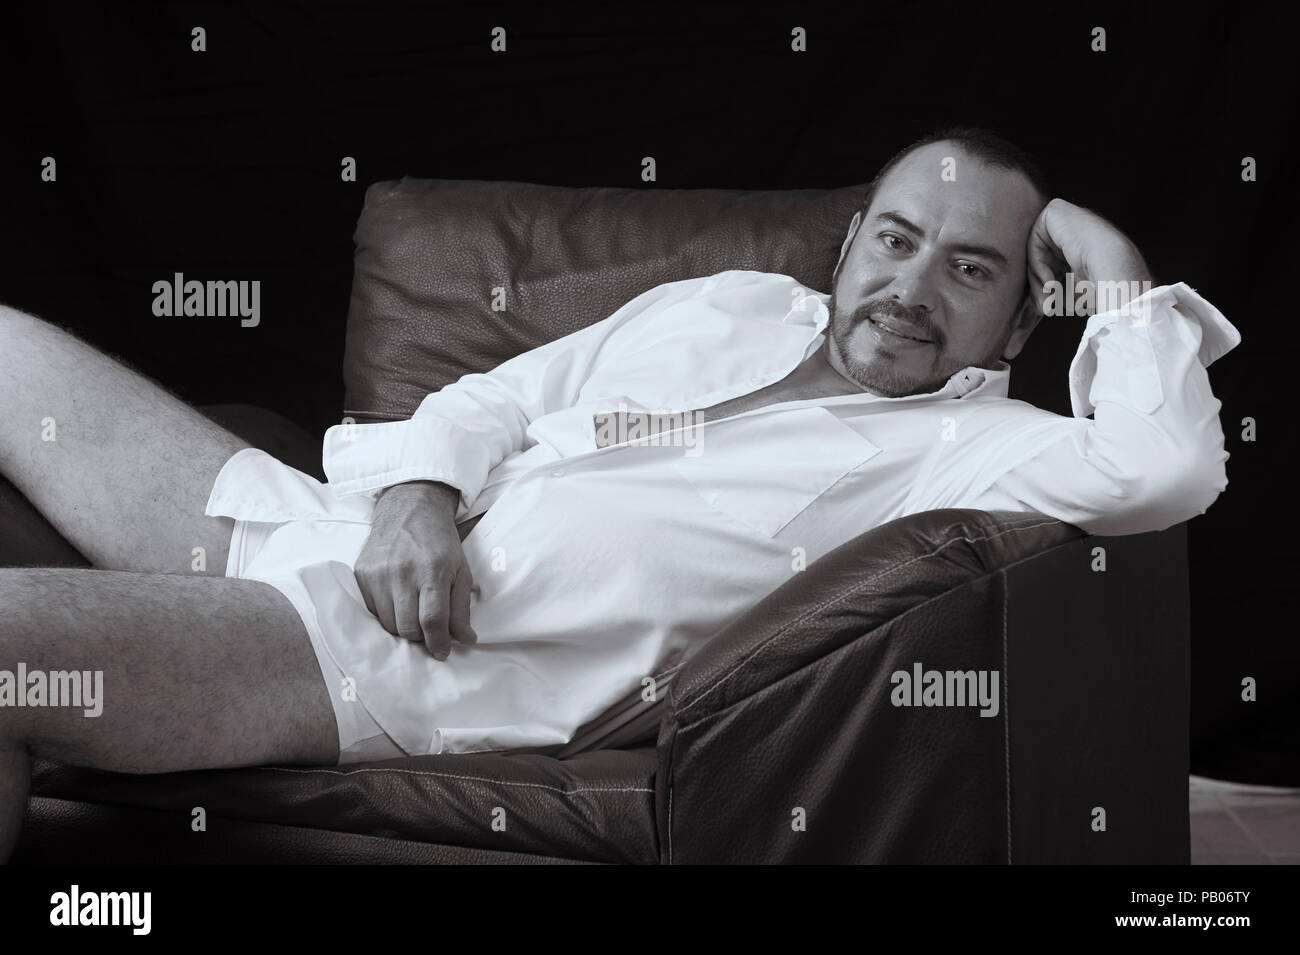 Studio noir et blanc portrait d'un homme en chemise blanche et des mémoires, allongé sur un canapé Banque D'Images